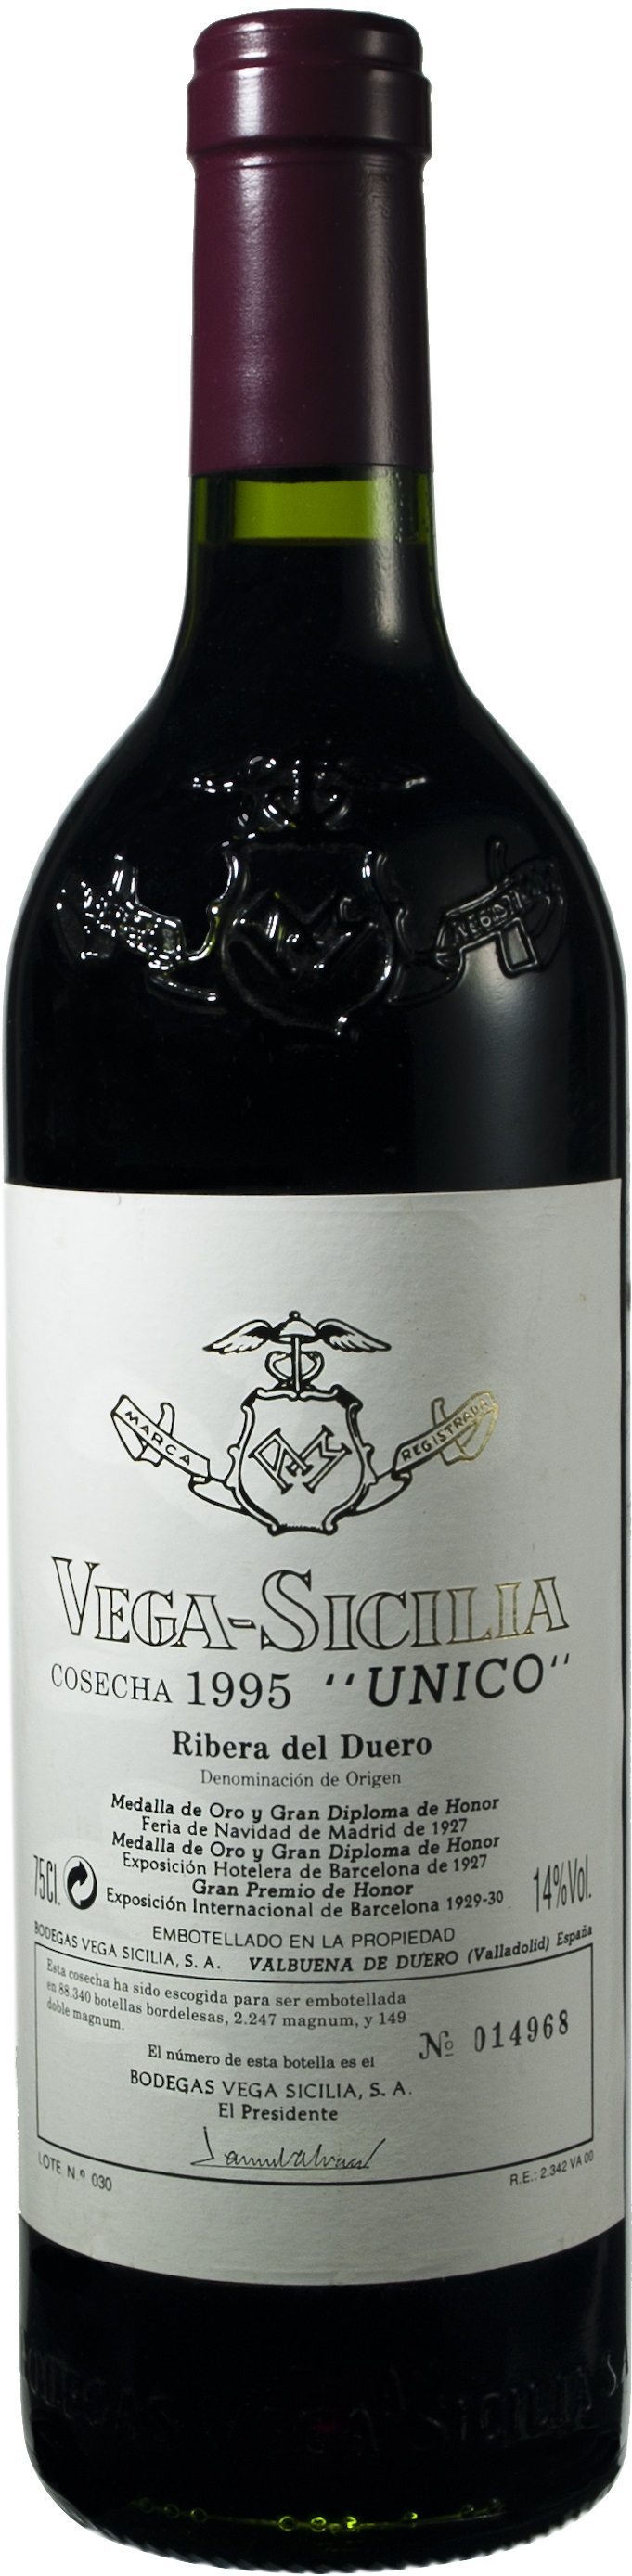 Imagen de la botella de Vino Vega Sicilia Reserva